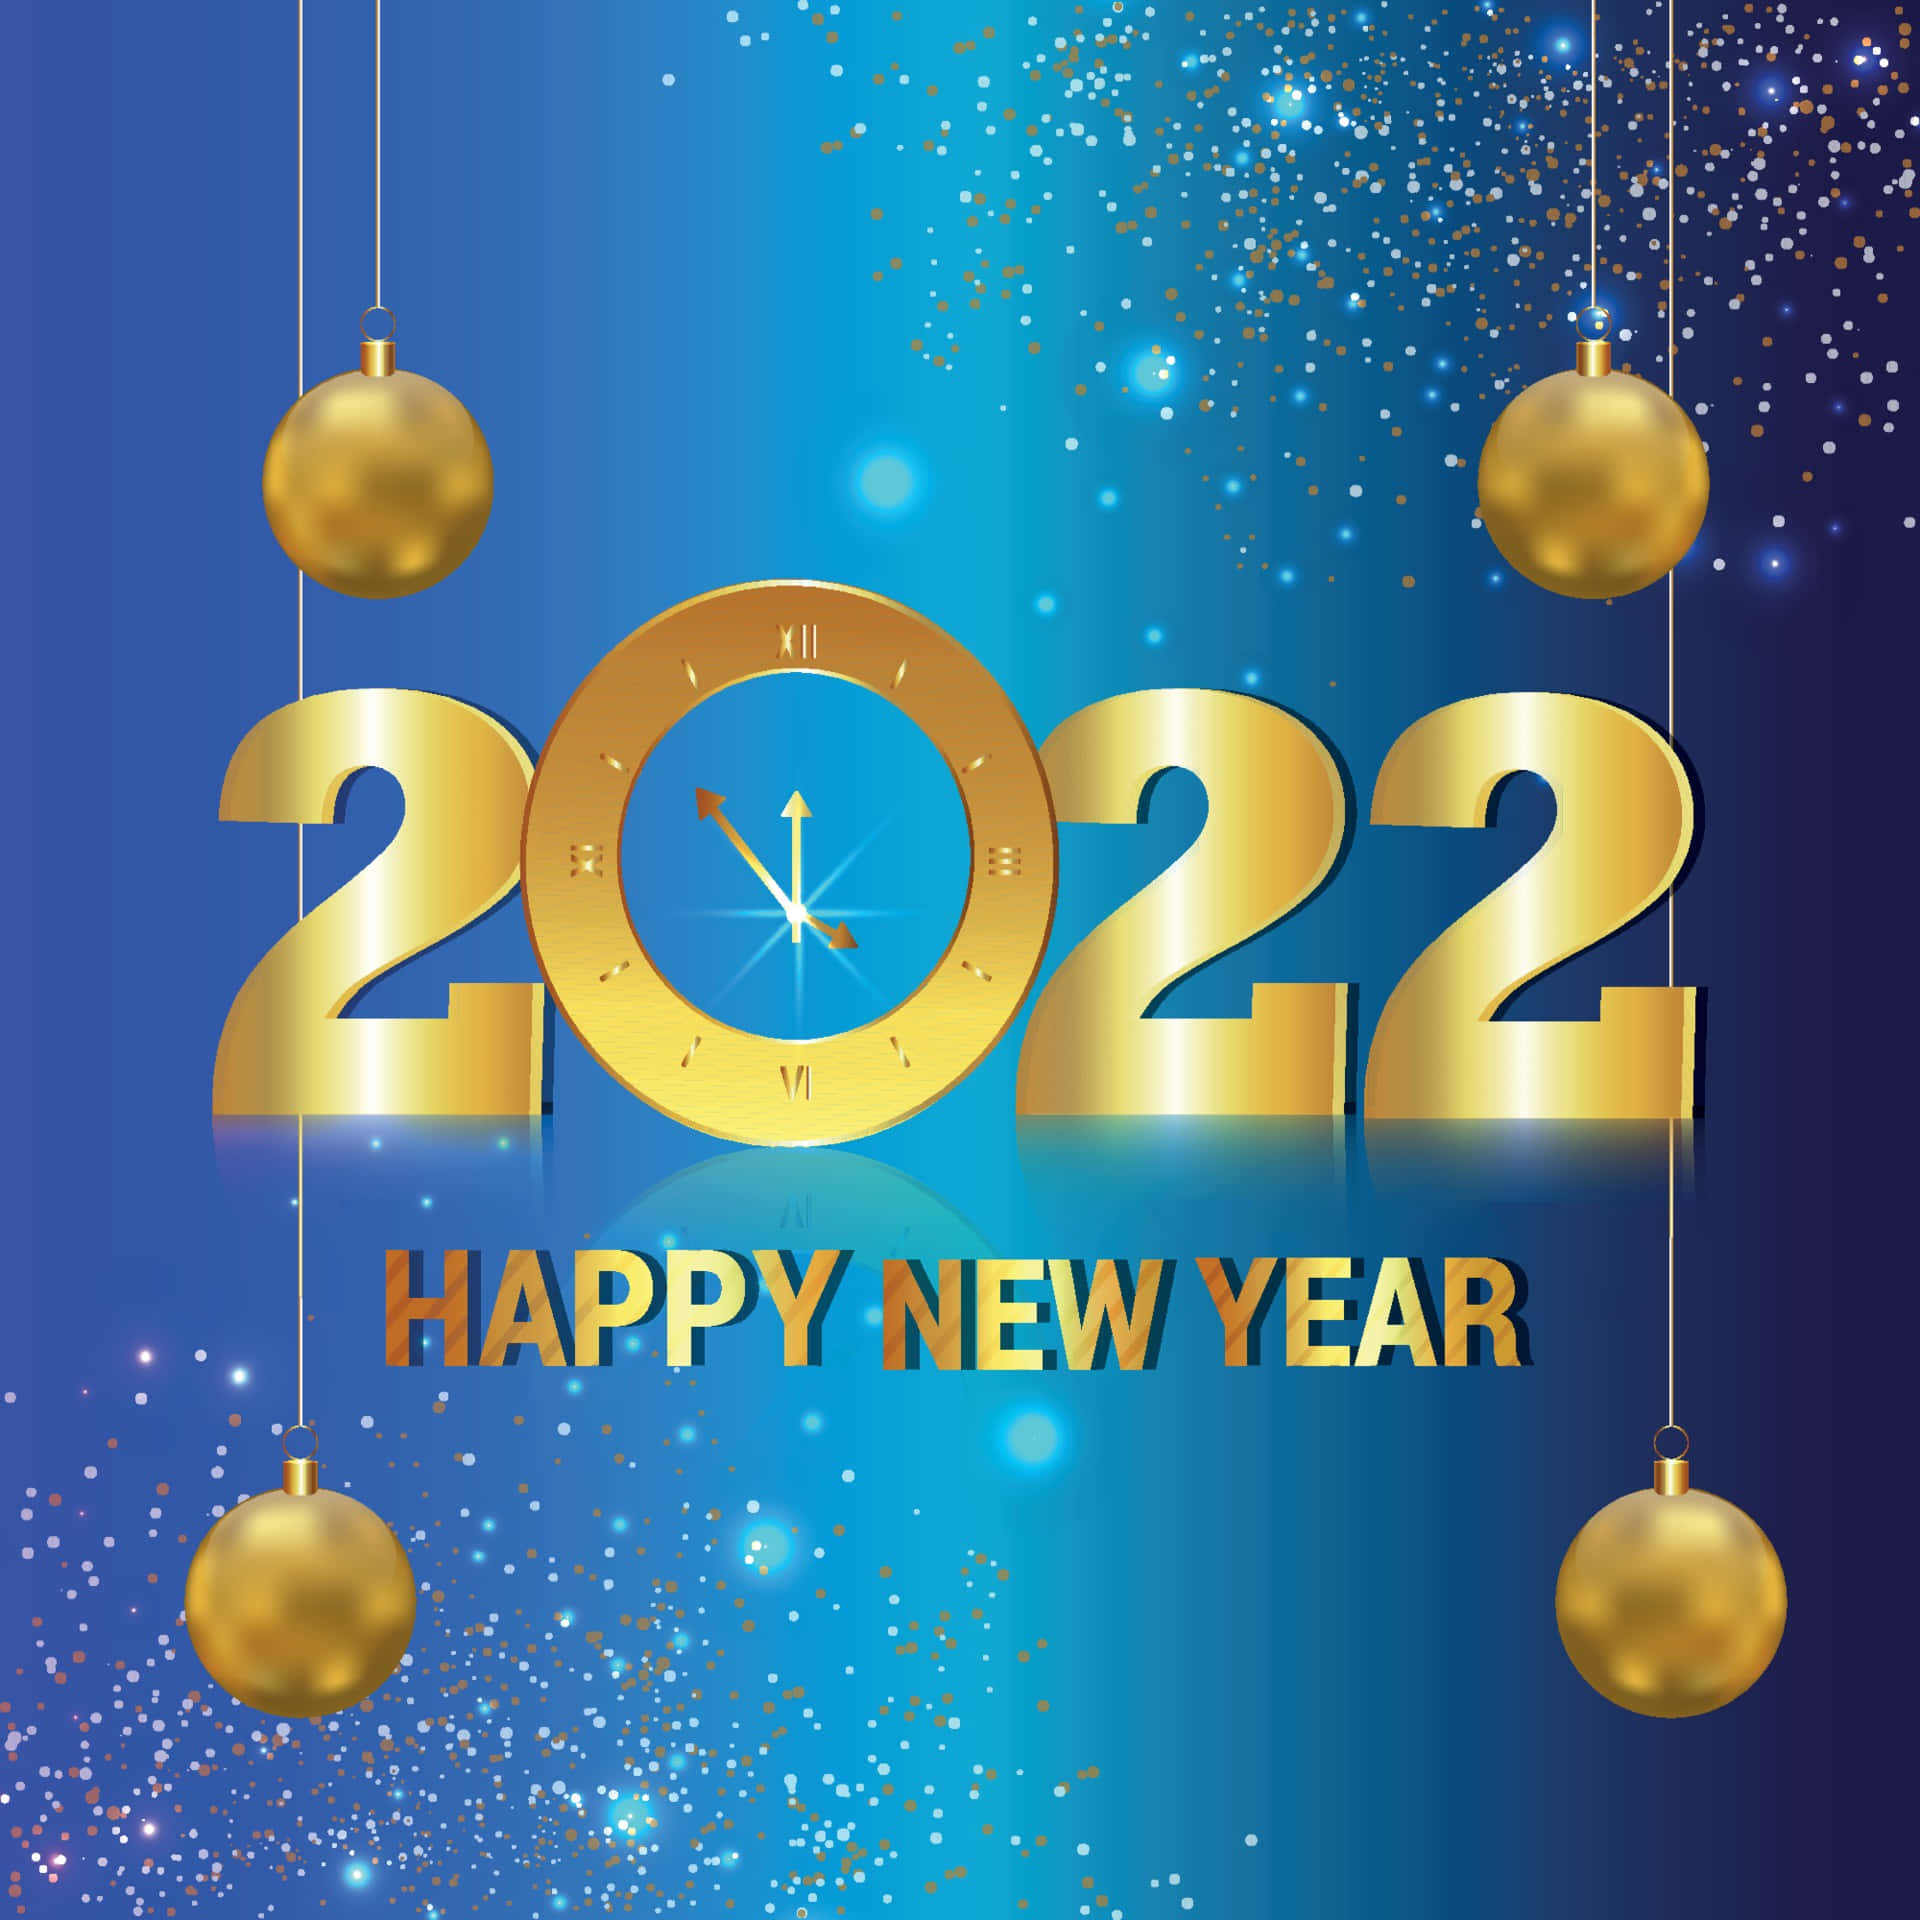 Ichwünsche Ihnen Ein Frohes Neues Jahr 2022!